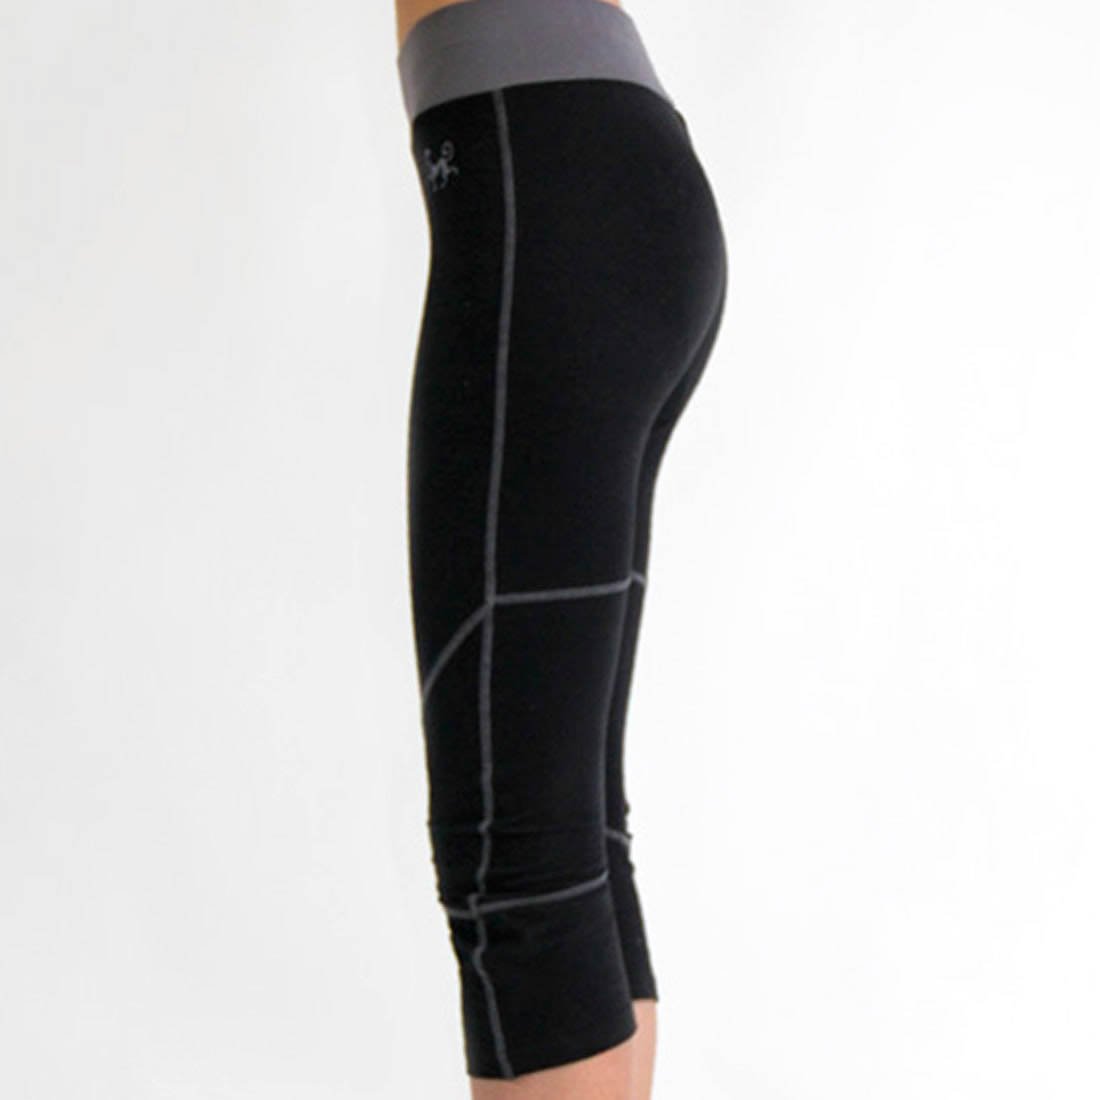 AGILO Black Yoga Pants Harem Drop Crotch with Zipped